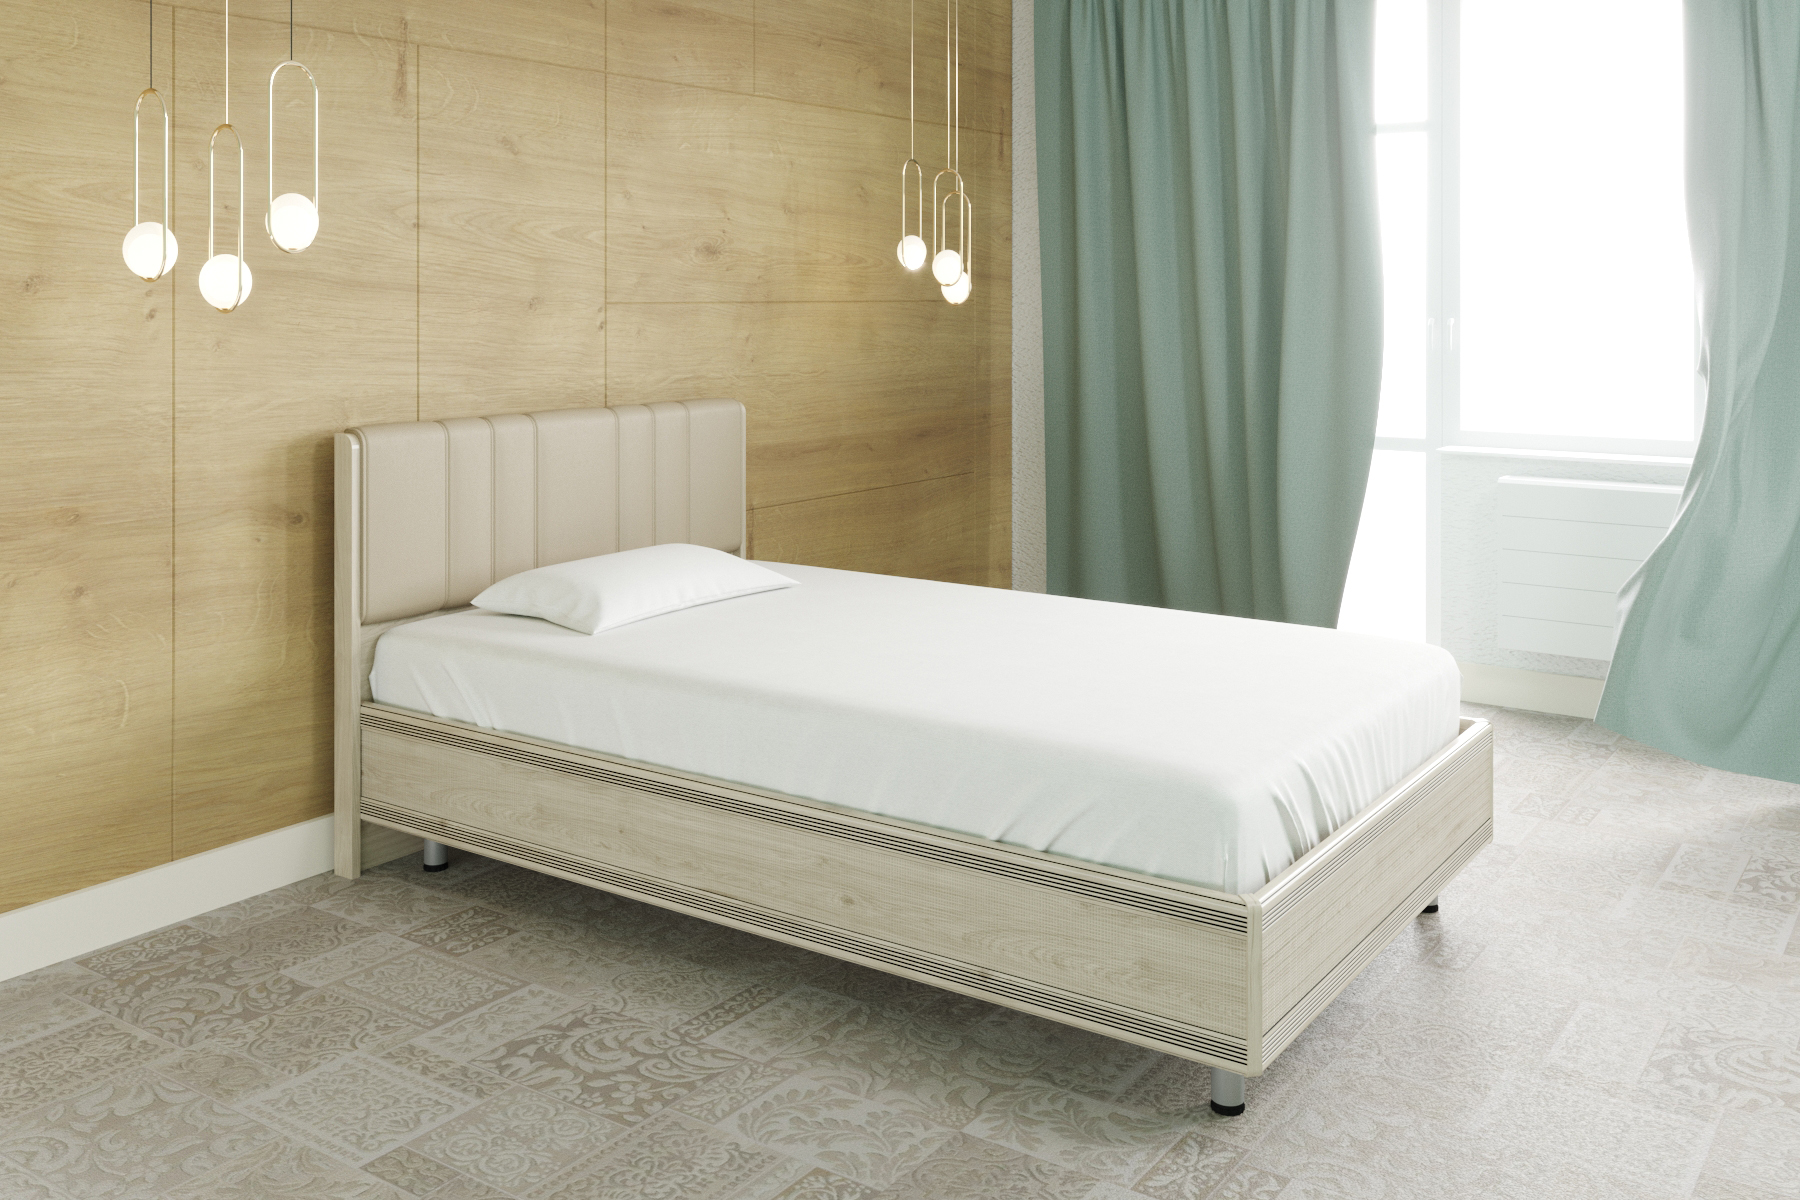 Односпальная кровать (1,2x2,0) КР-2011 – изображение 3